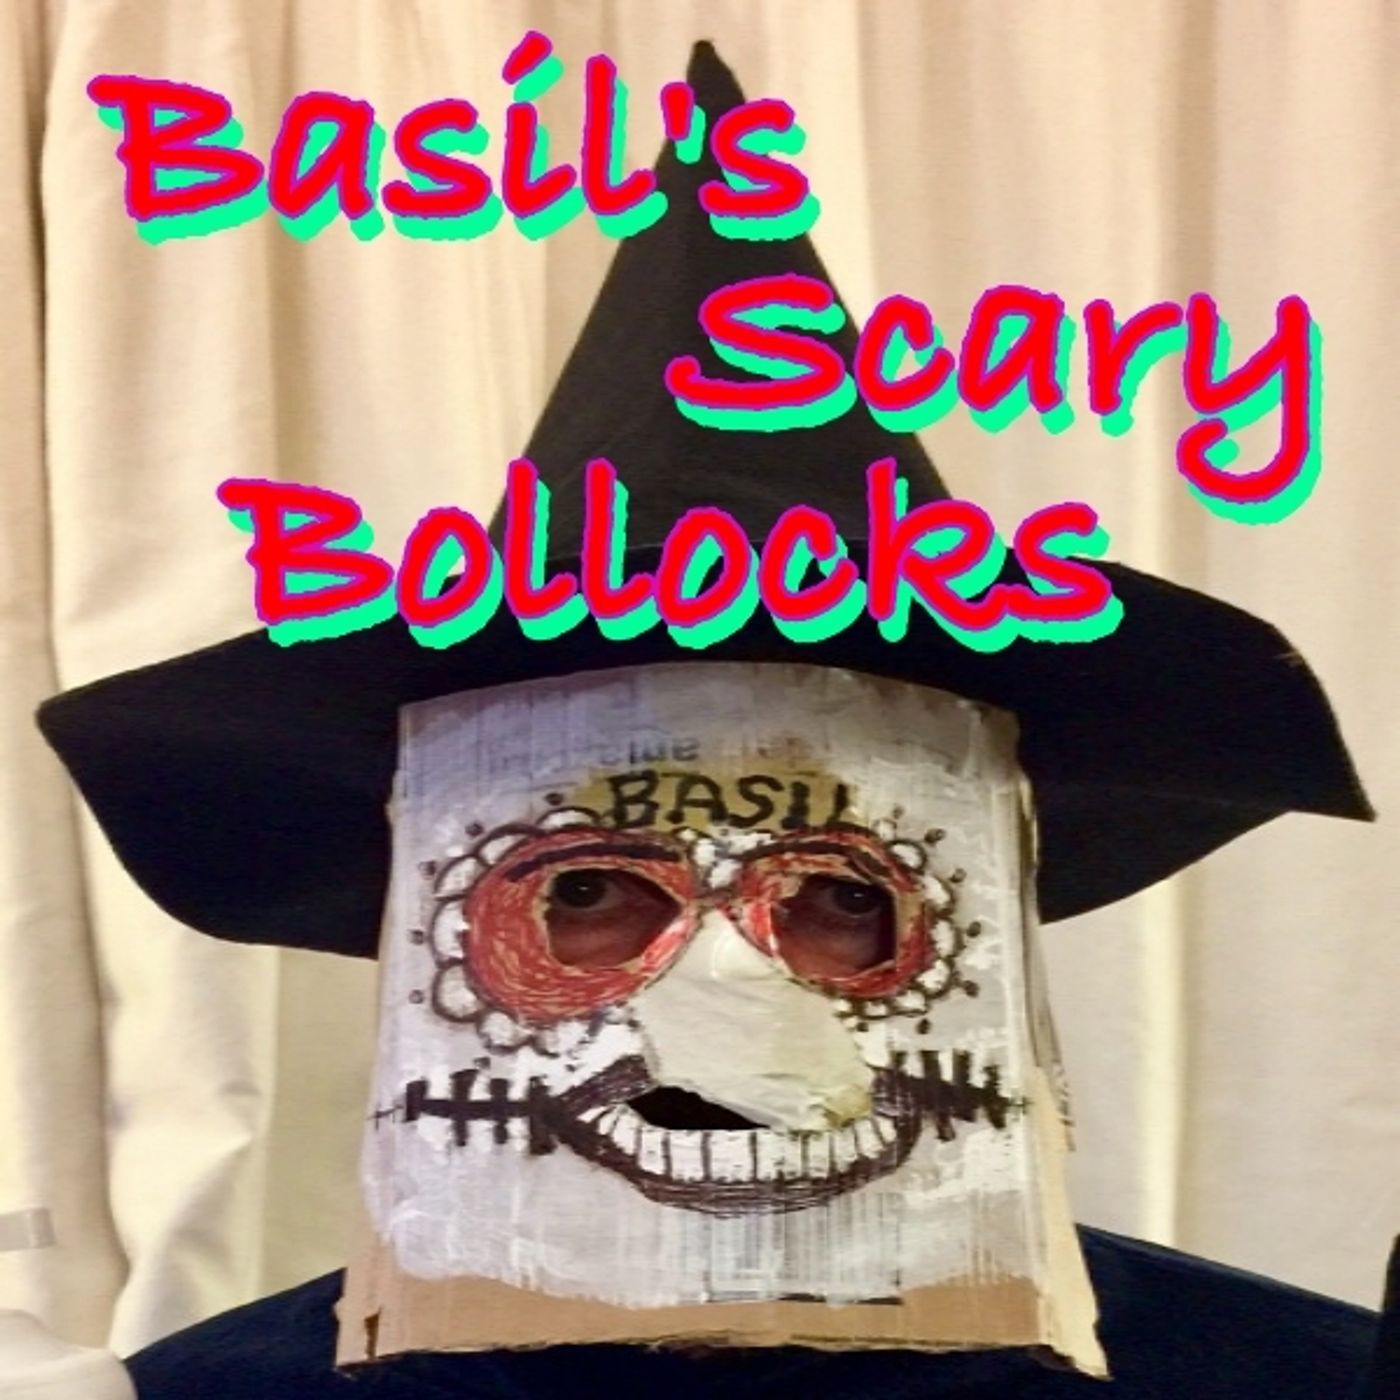 Basil's Scary Bollocks